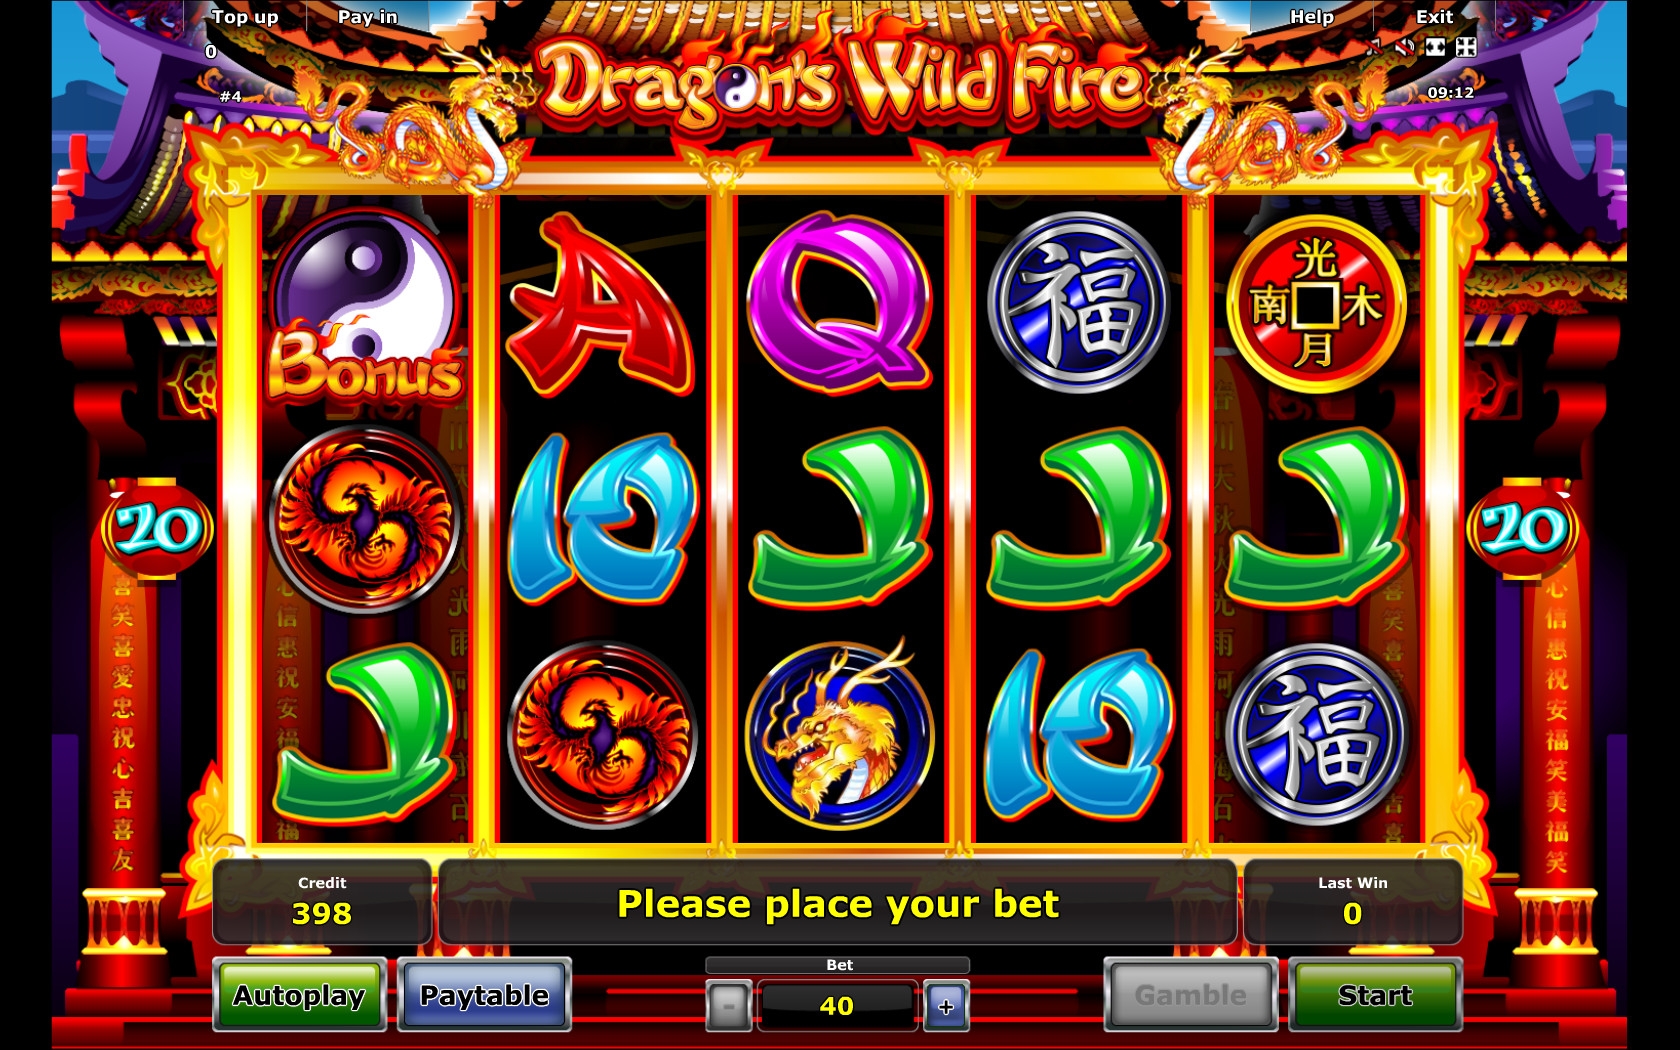 dragon s temple игровой автомат